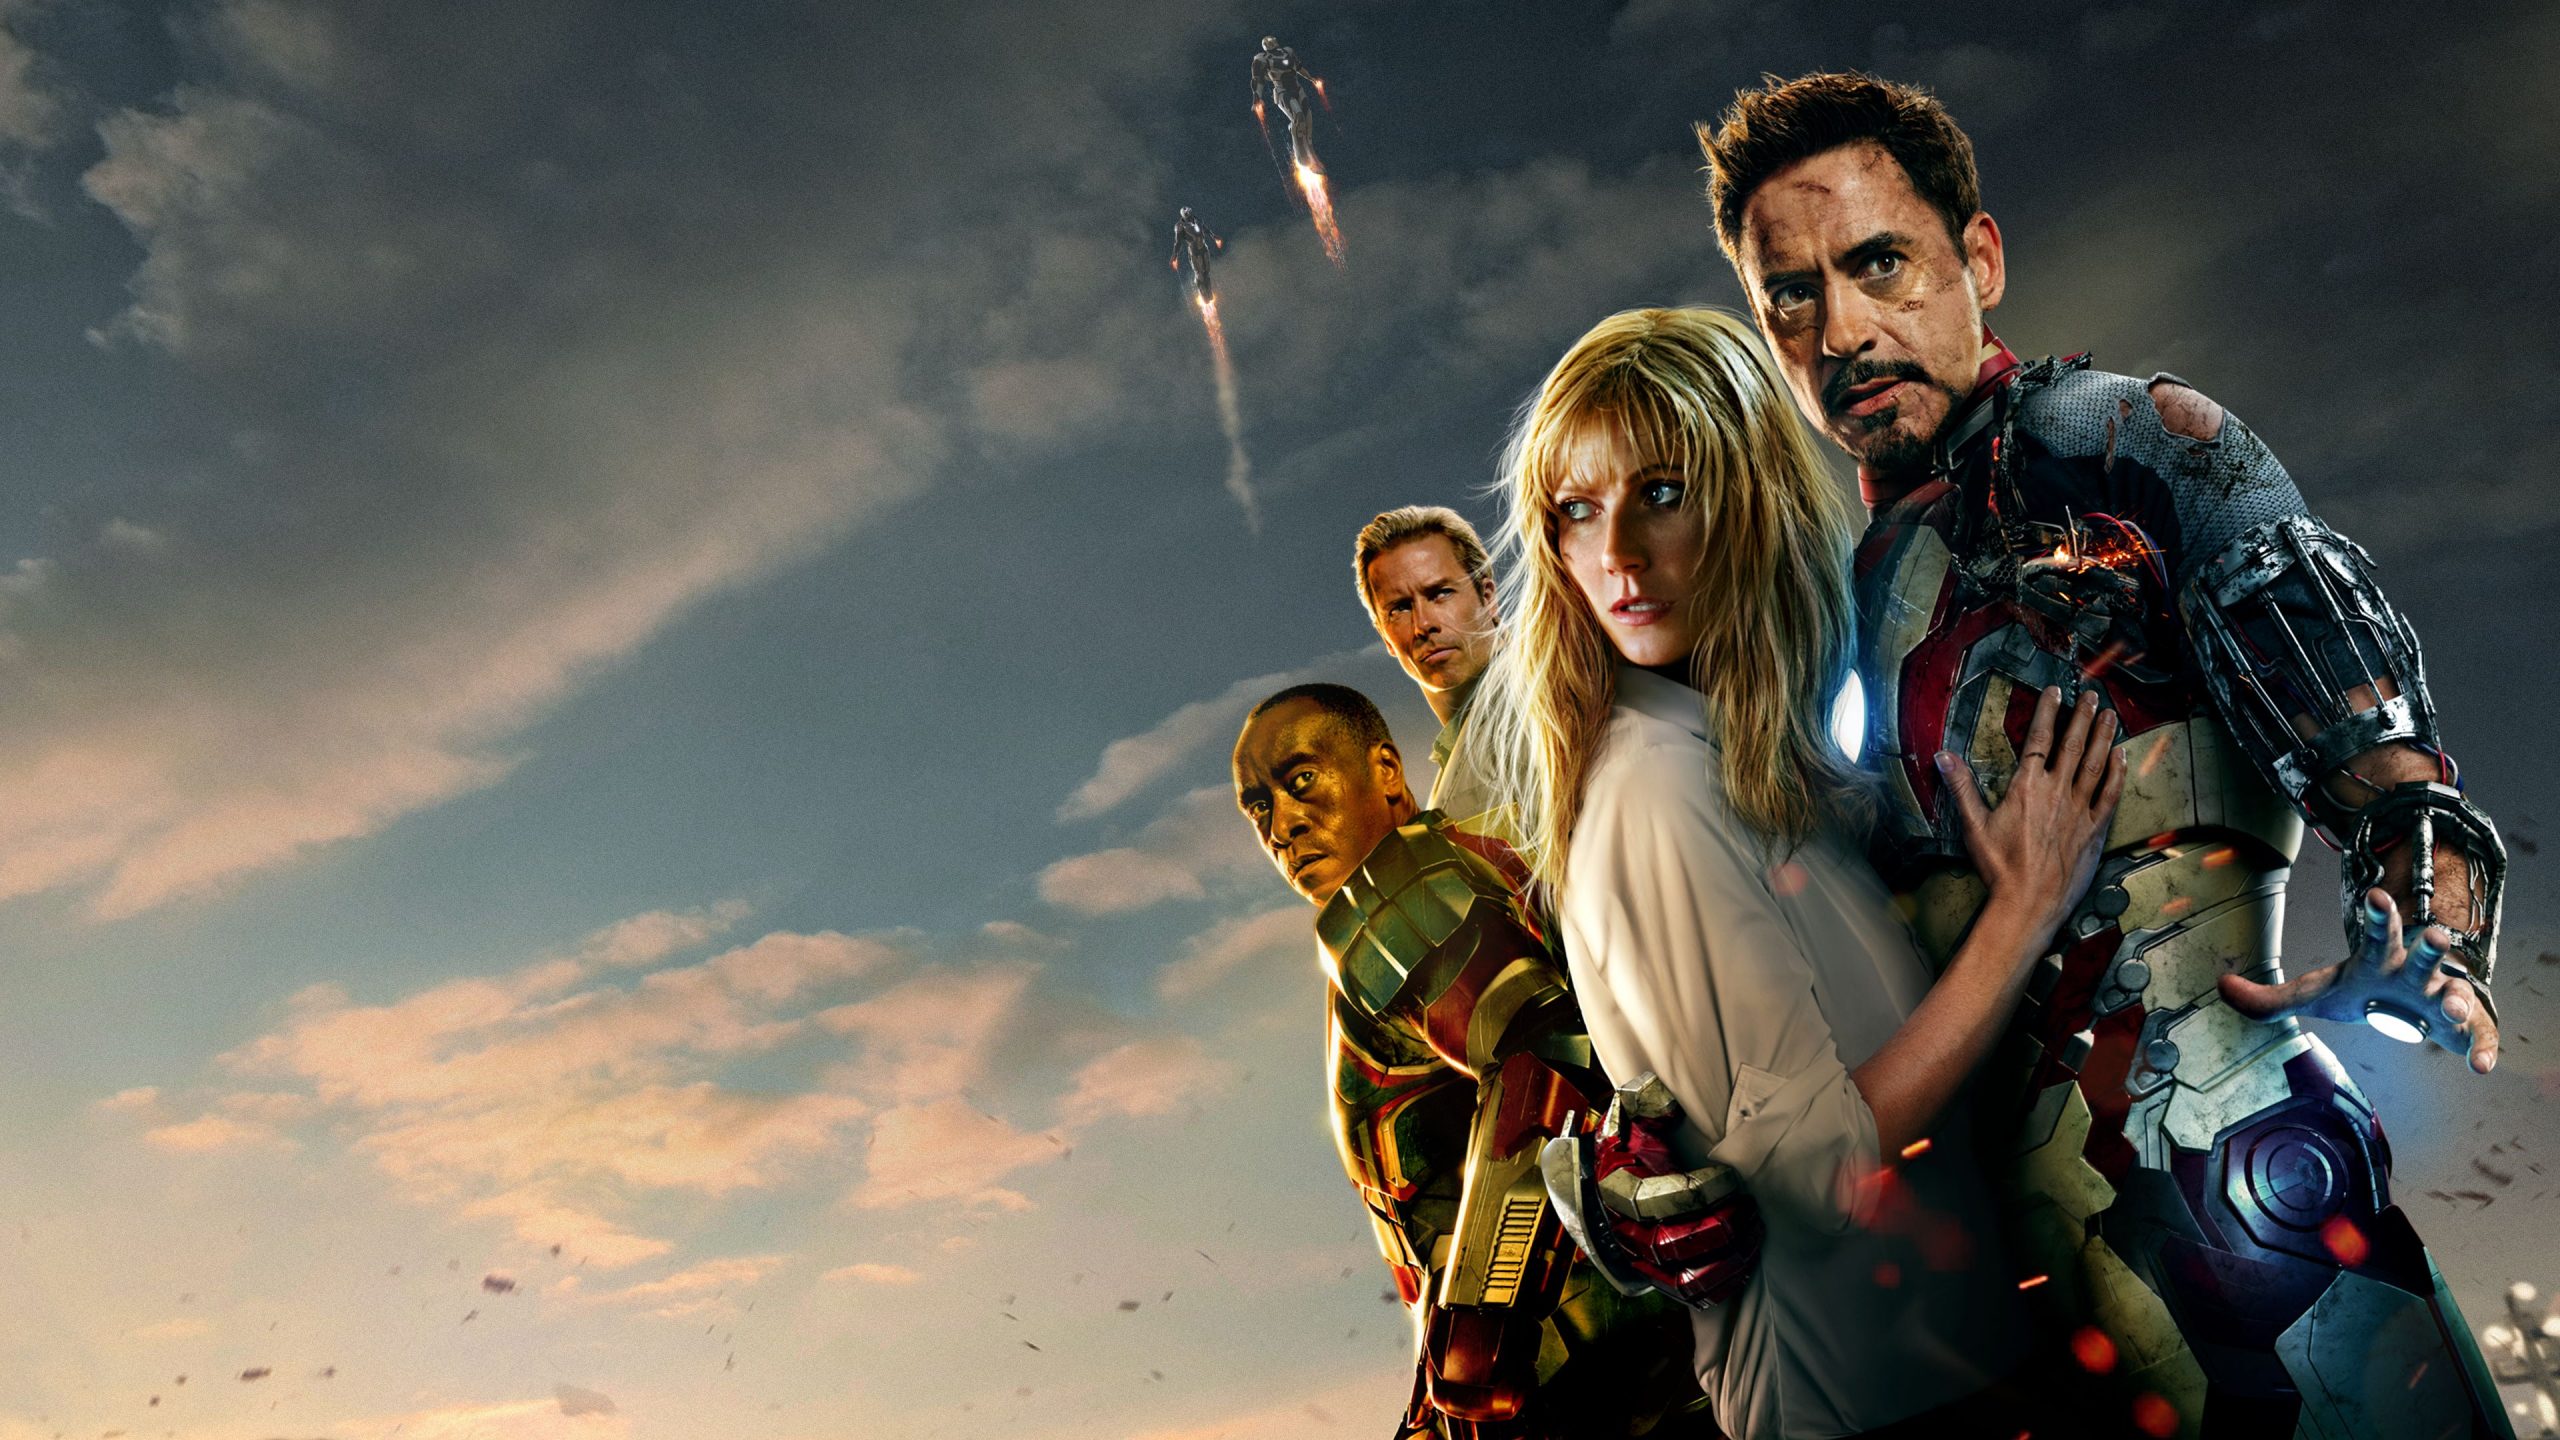 Iron Man 3, Image Source: Disney